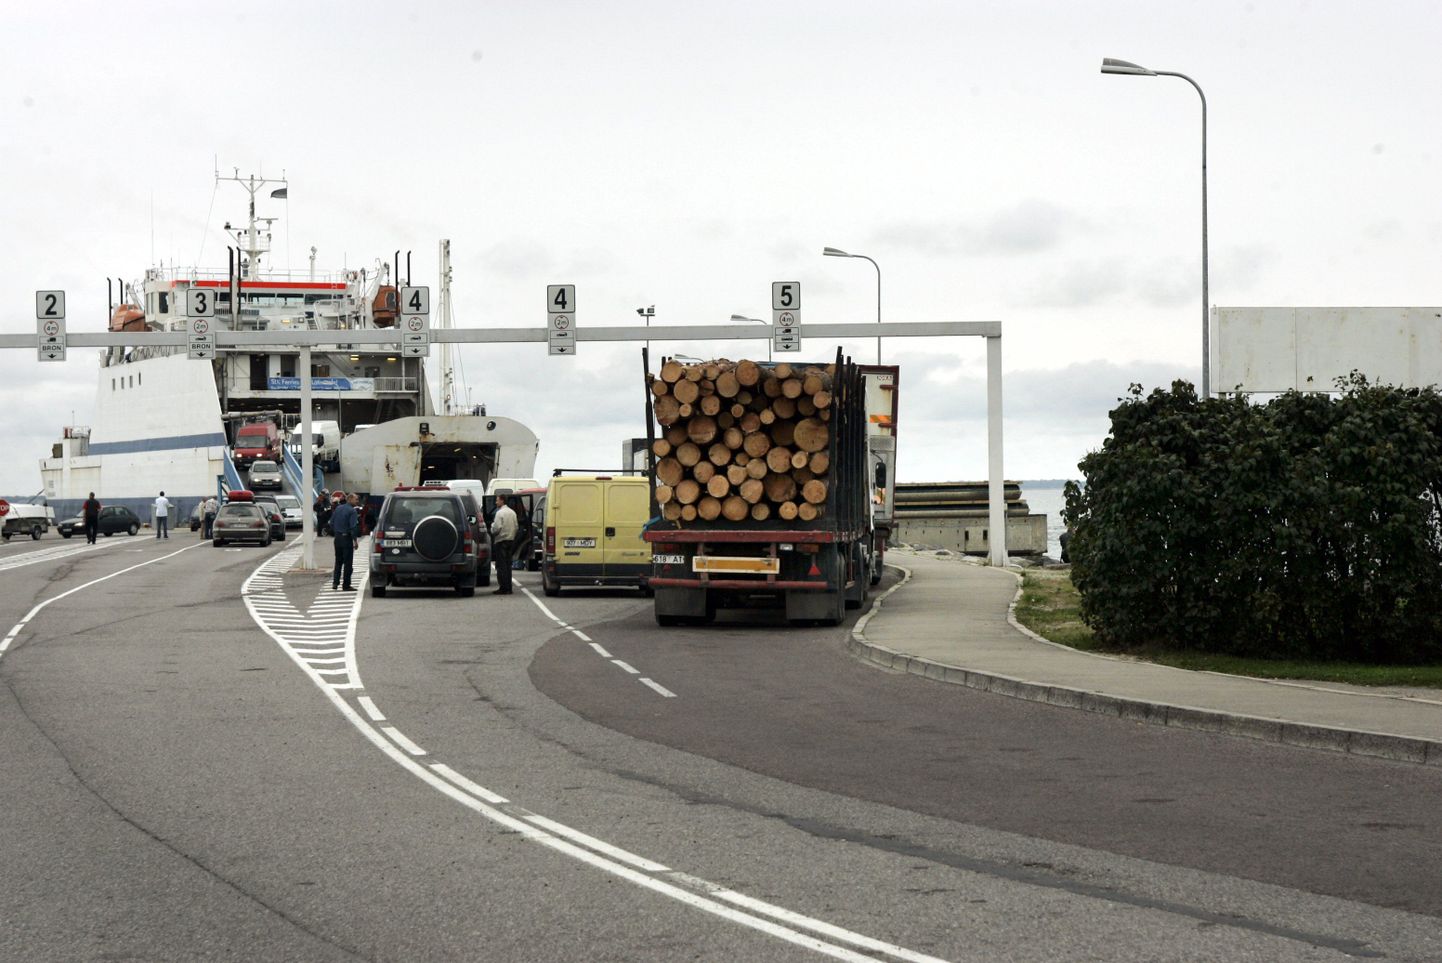 TLNPM02:SAAREMAA PRAAMID : TALLINN, EESTI,12SEP05-
 Kuivastu sadamas autode pealeminek
pl/ Foto PEETER LANGOVITS POSTIMEES